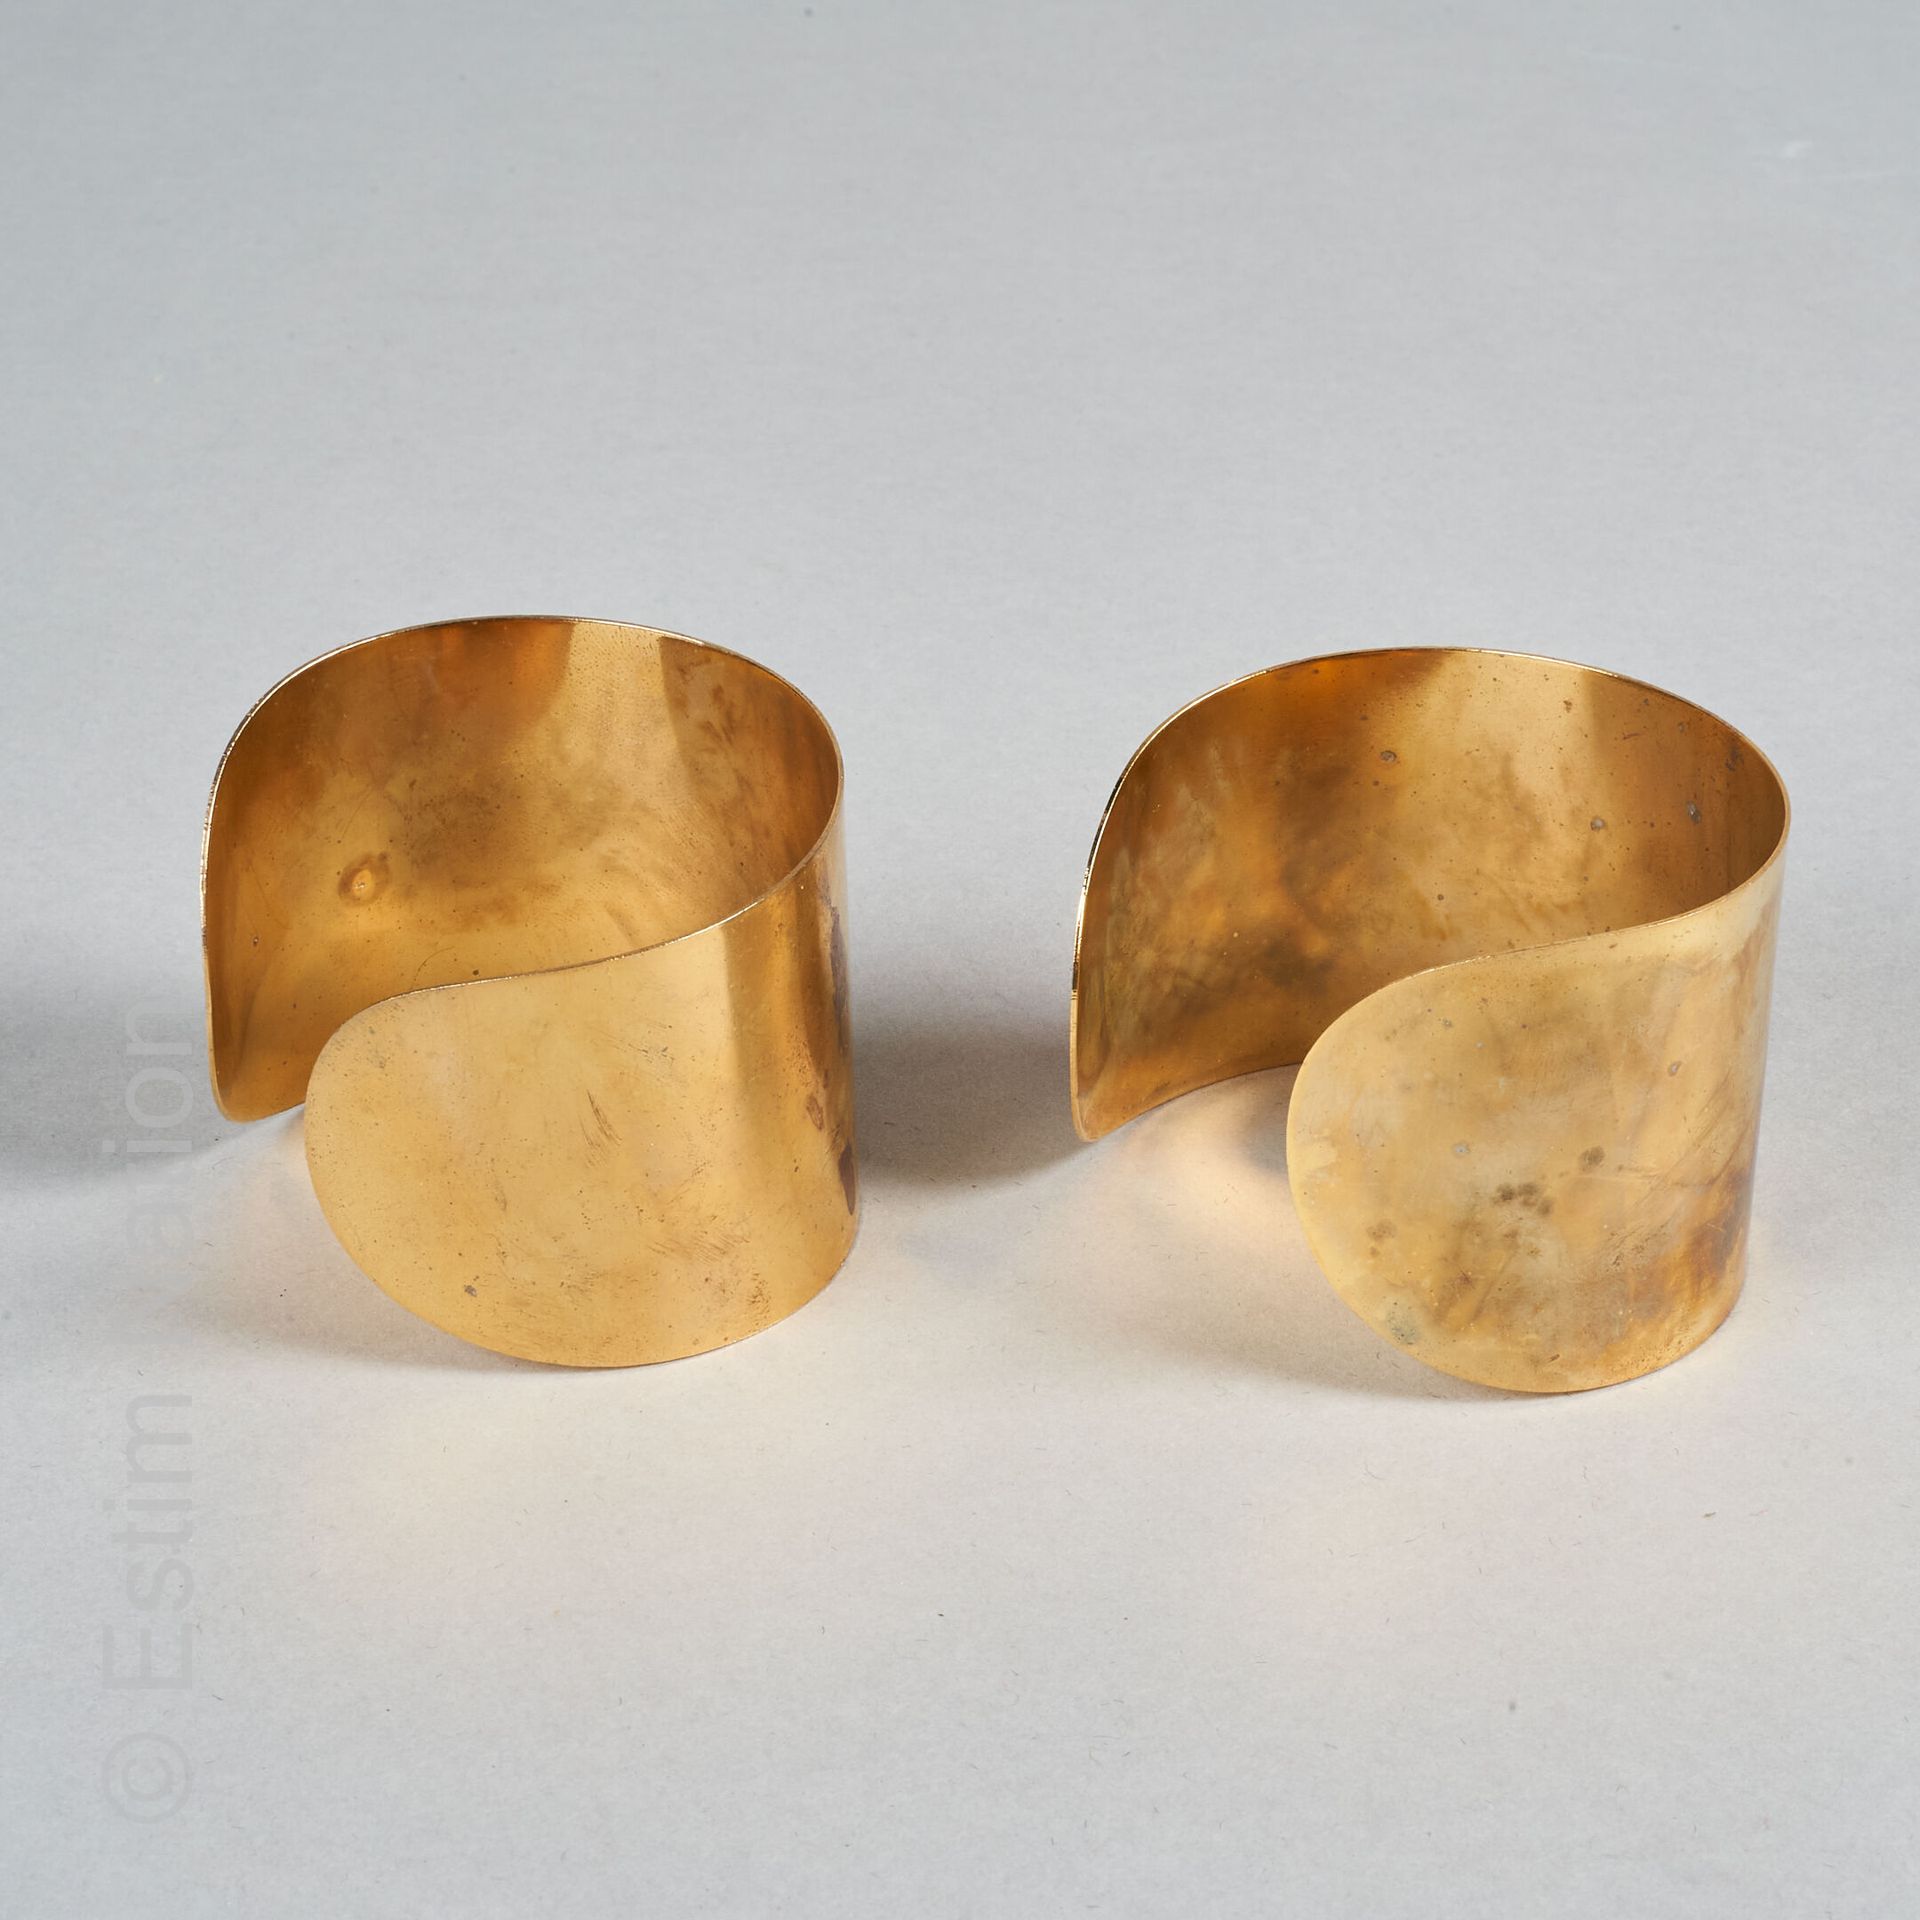 MANCHETTES CUIVRE Par de brazaletes de cobre. 

Anchura: 4,5 cm 

(oxidaciones)